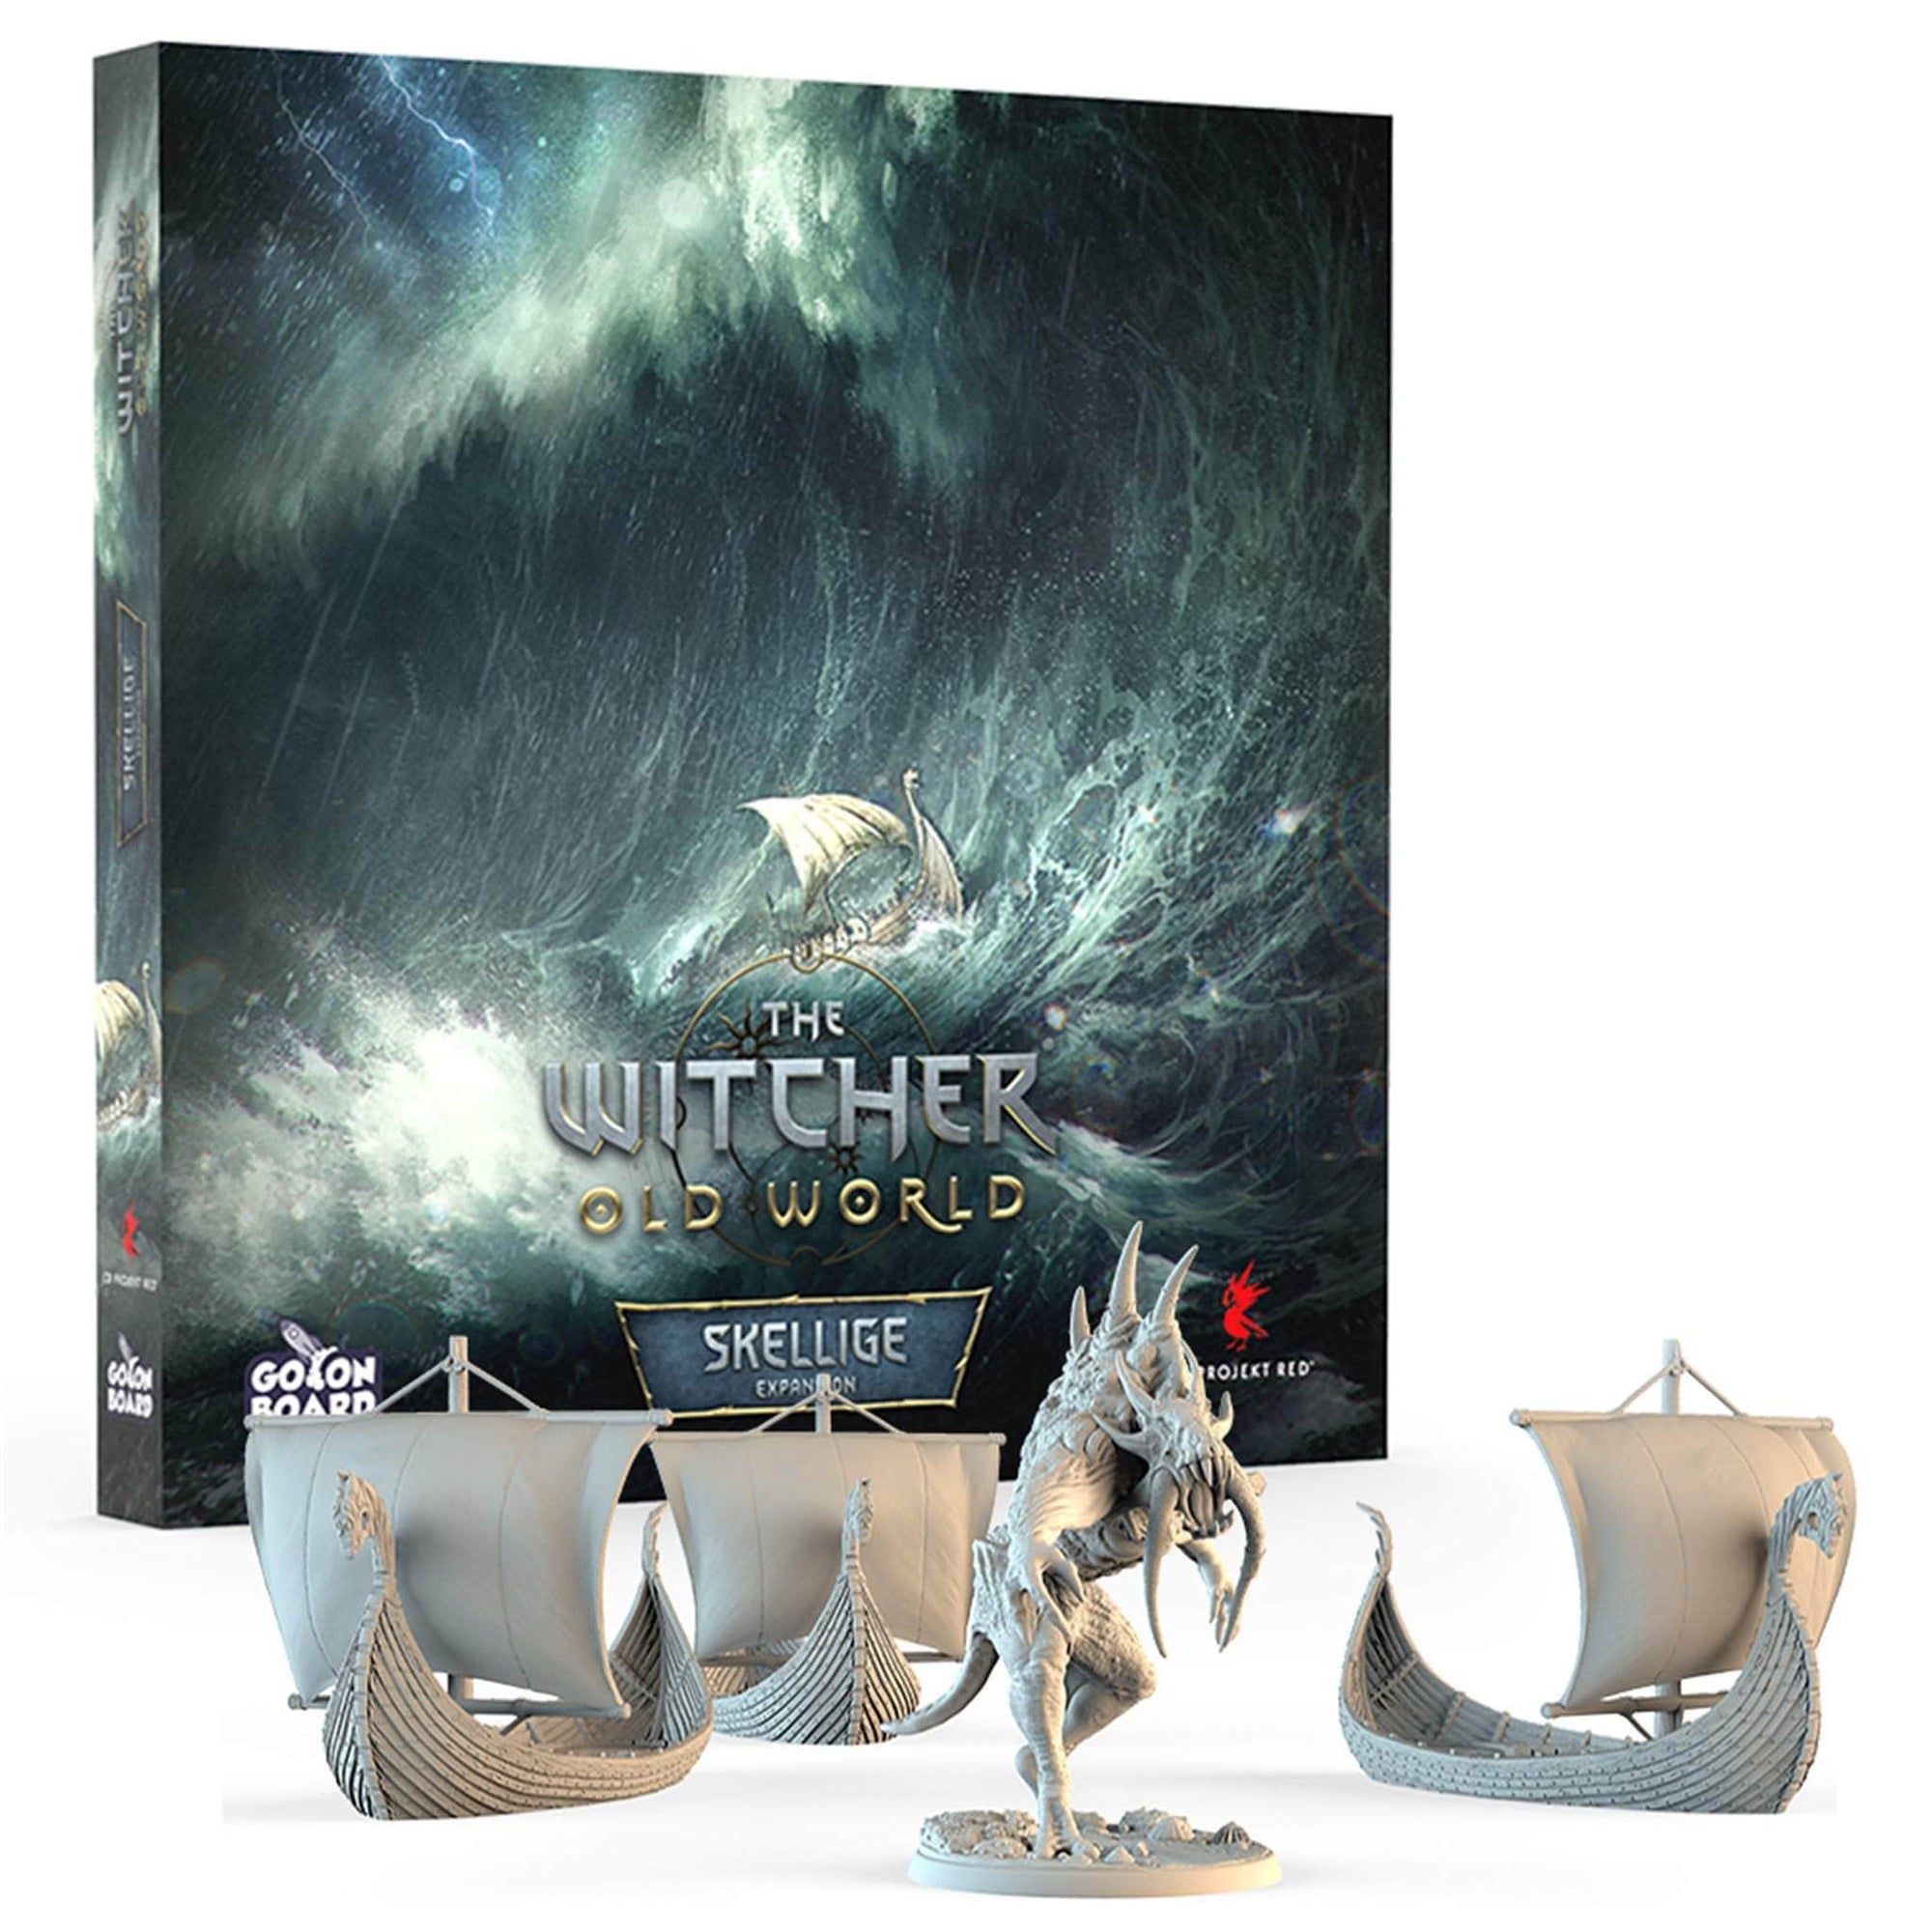 The Witcher: Old World Skellige (Kickstarter Pre-Order Special) Expansion Kickstarter Board Go On Board KS001114F